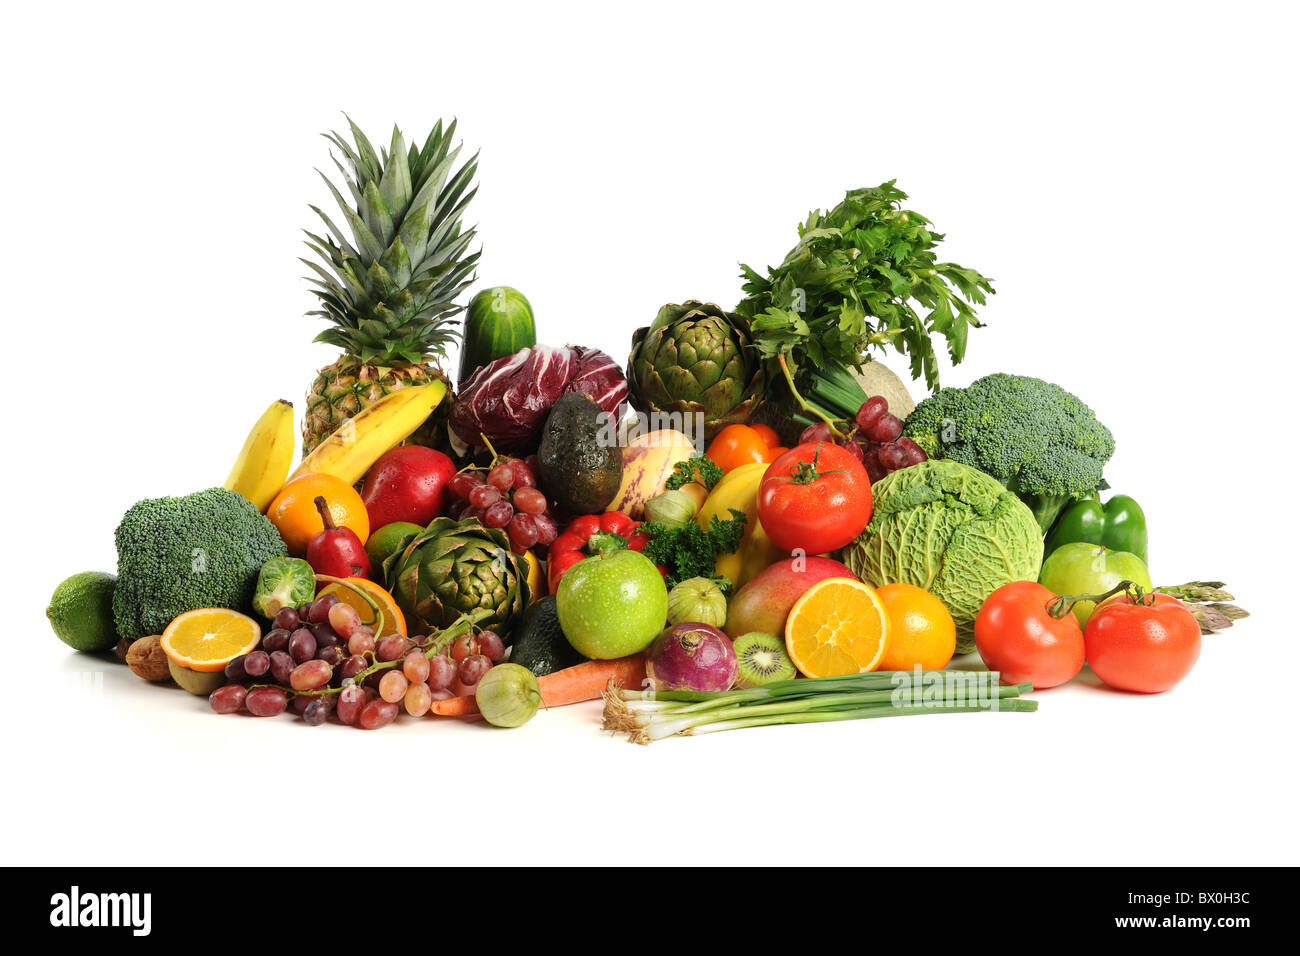 Les fruits et légumes frais sur fond blanc Banque D'Images